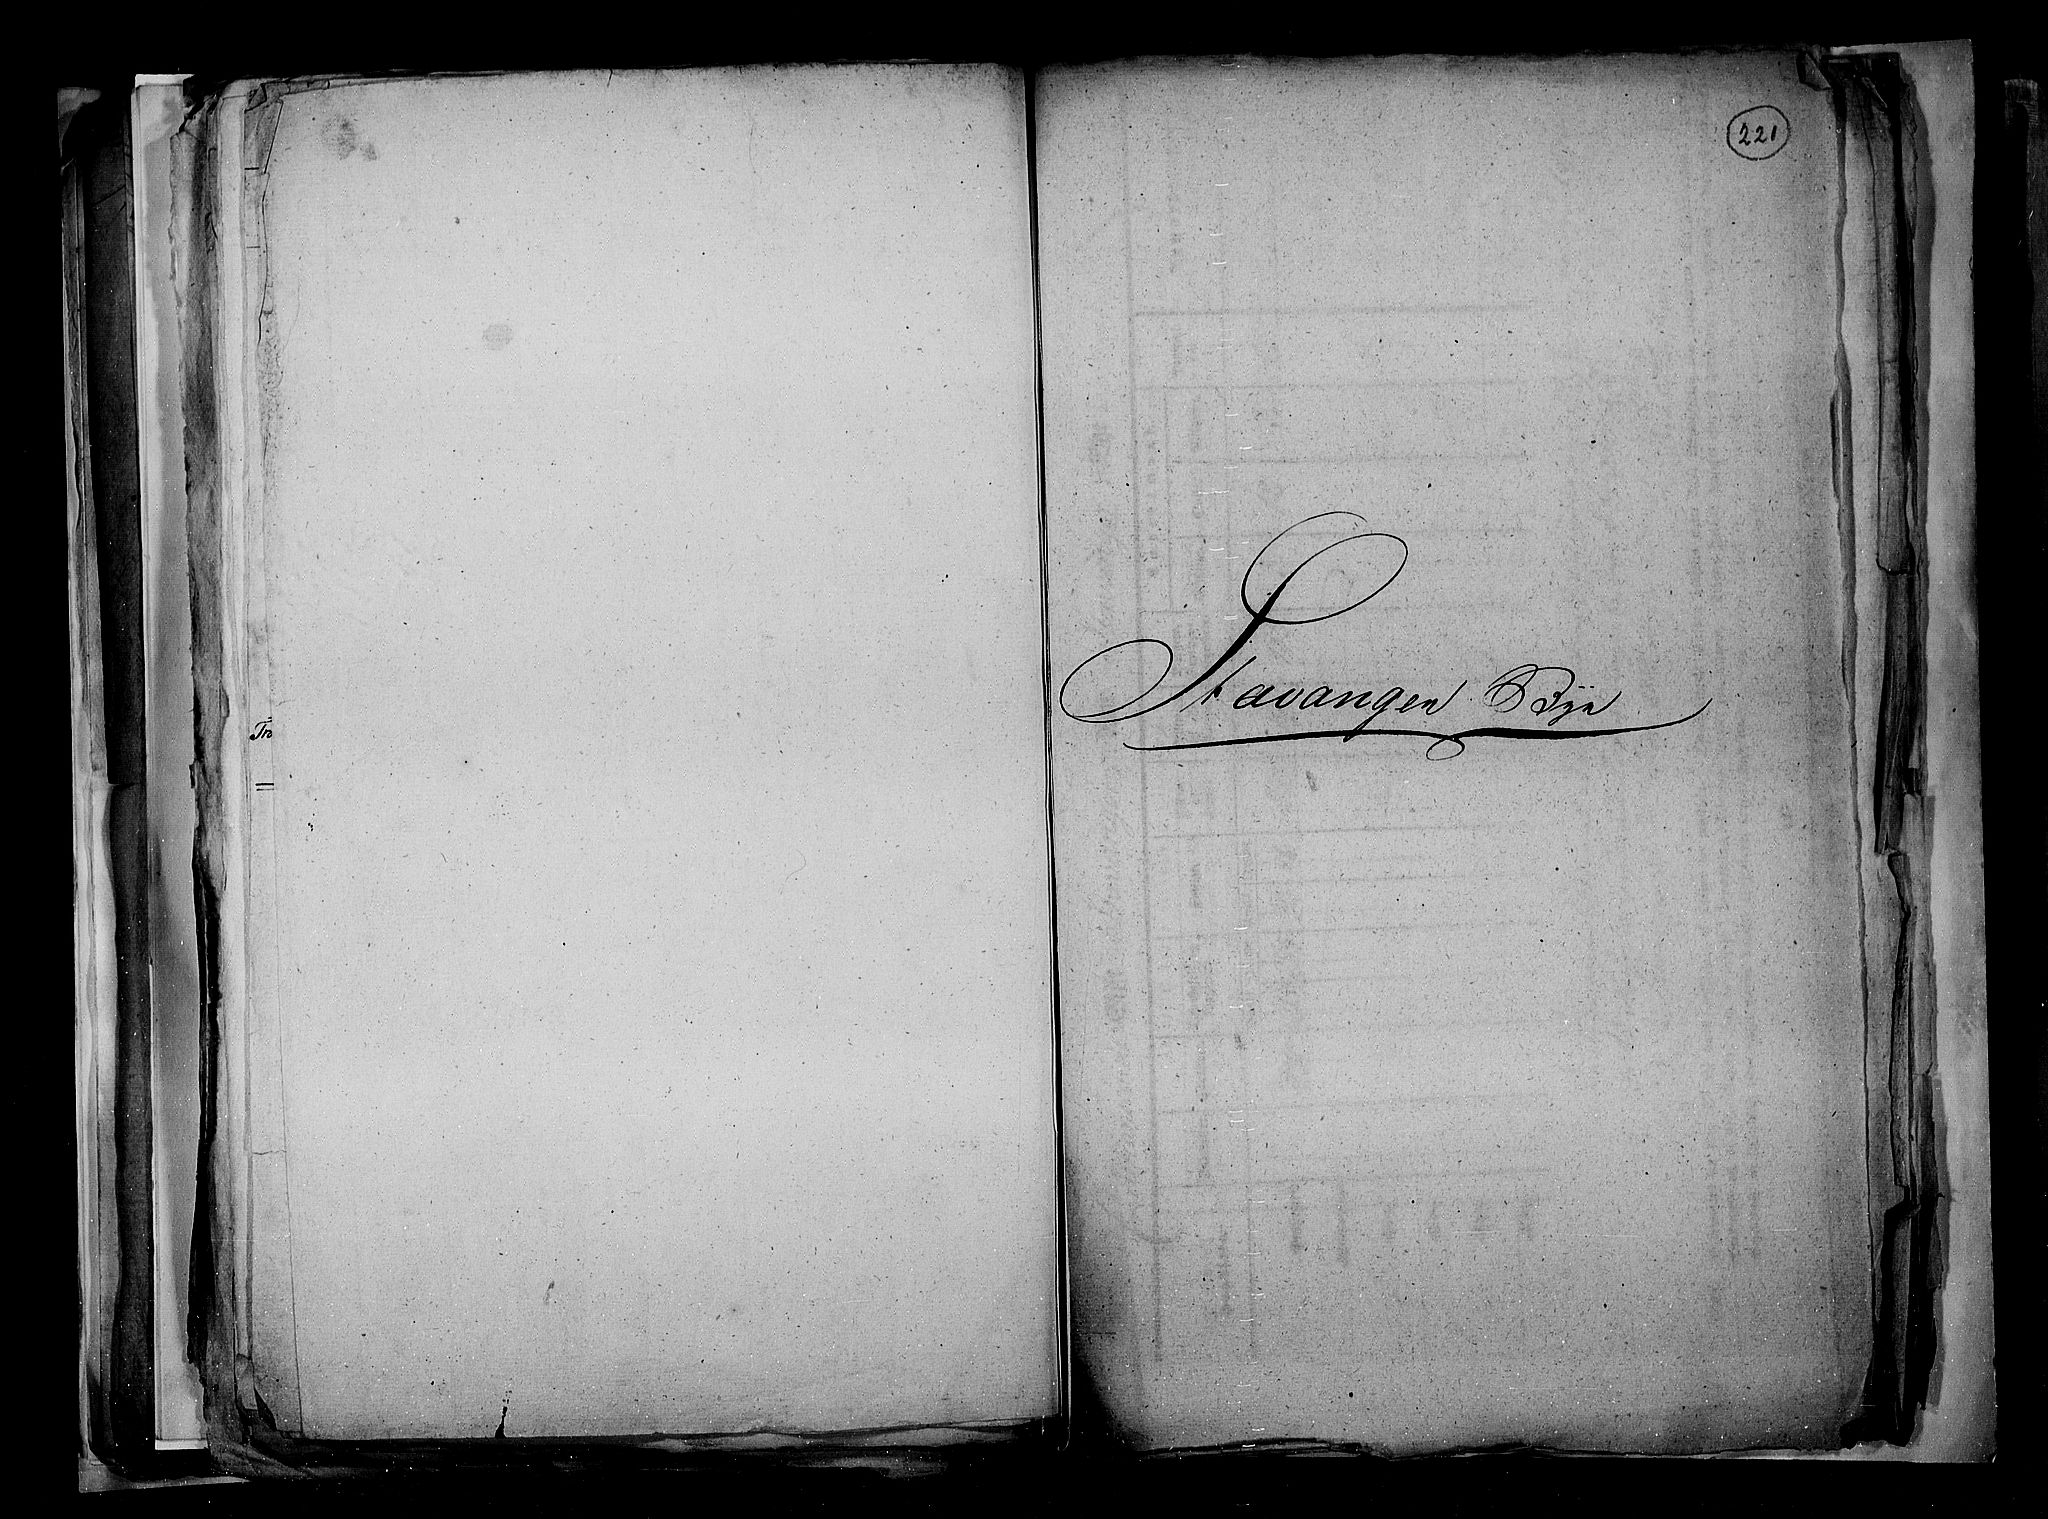 RA, Folketellingen 1815, bind 3: Tromsø stift og byene, 1815, s. 148